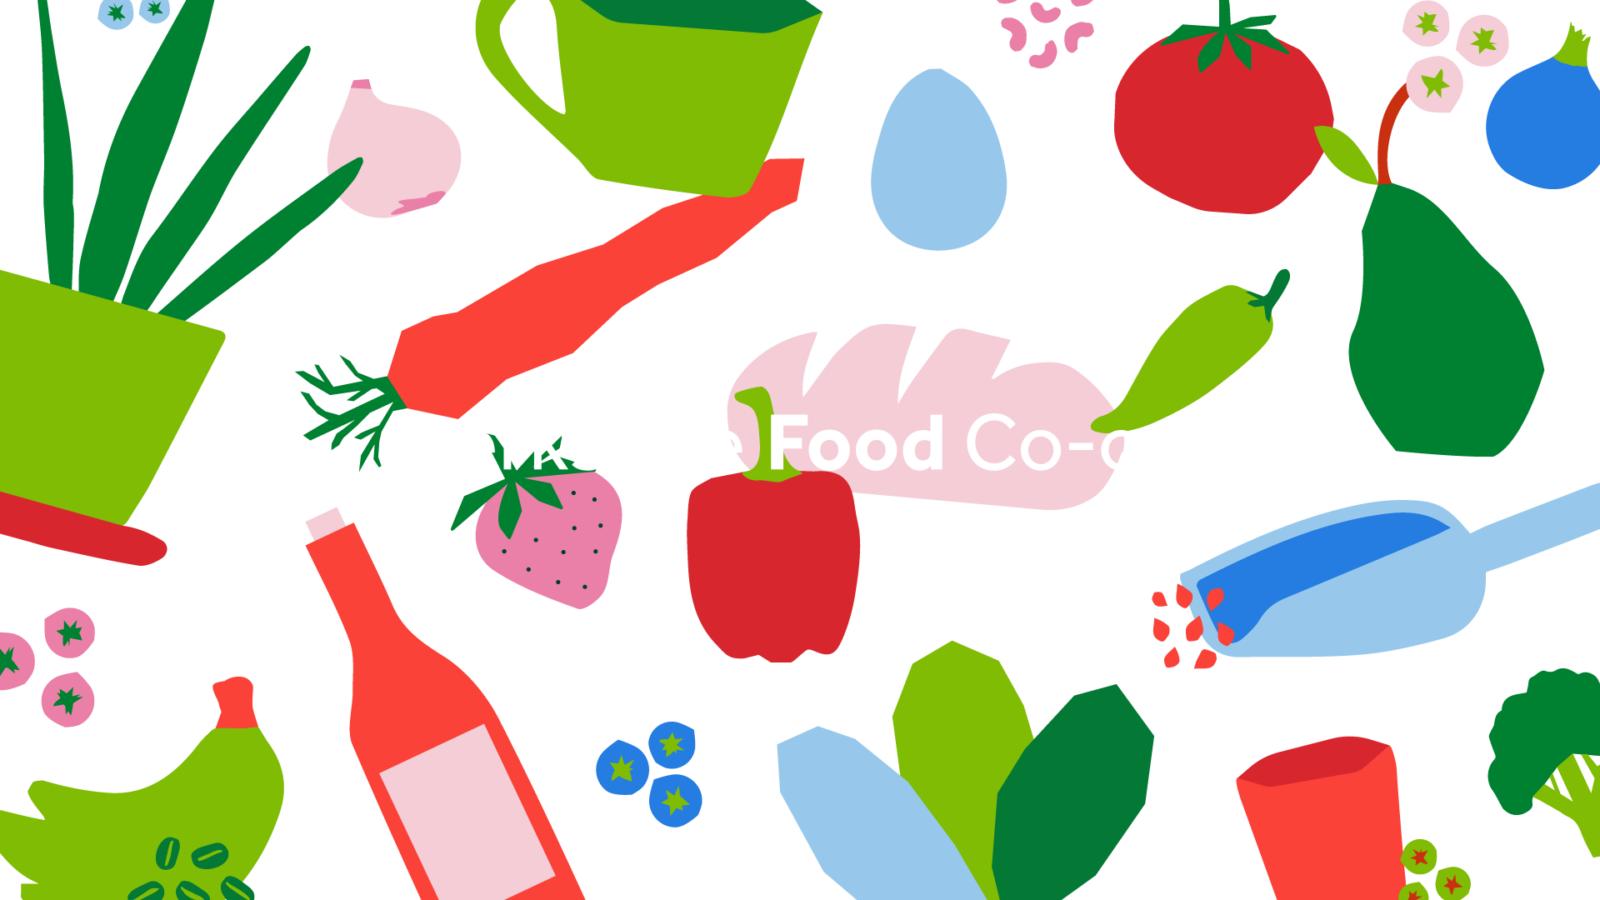 Berkshire Food Co-op - Berkshire Food Co-op (1600x900)